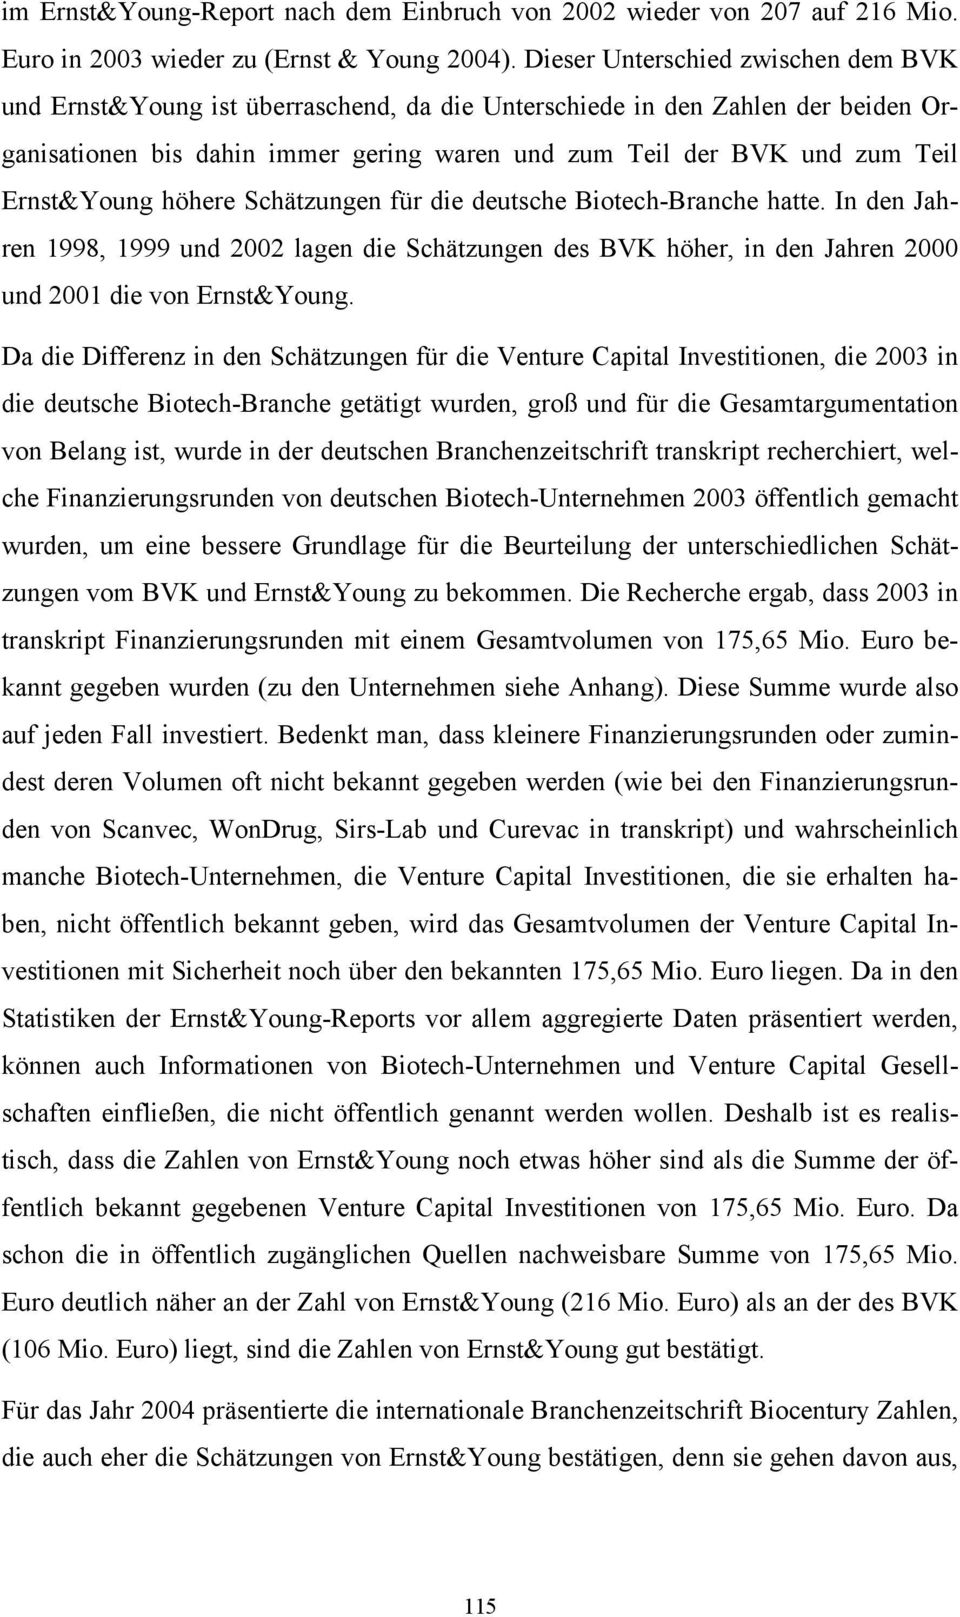 Ernst&Young höhere Schätzungen für die deutsche Biotech-Branche hatte. In den Jahren 1998, 1999 und 2002 lagen die Schätzungen des BVK höher, in den Jahren 2000 und 2001 die von Ernst&Young.